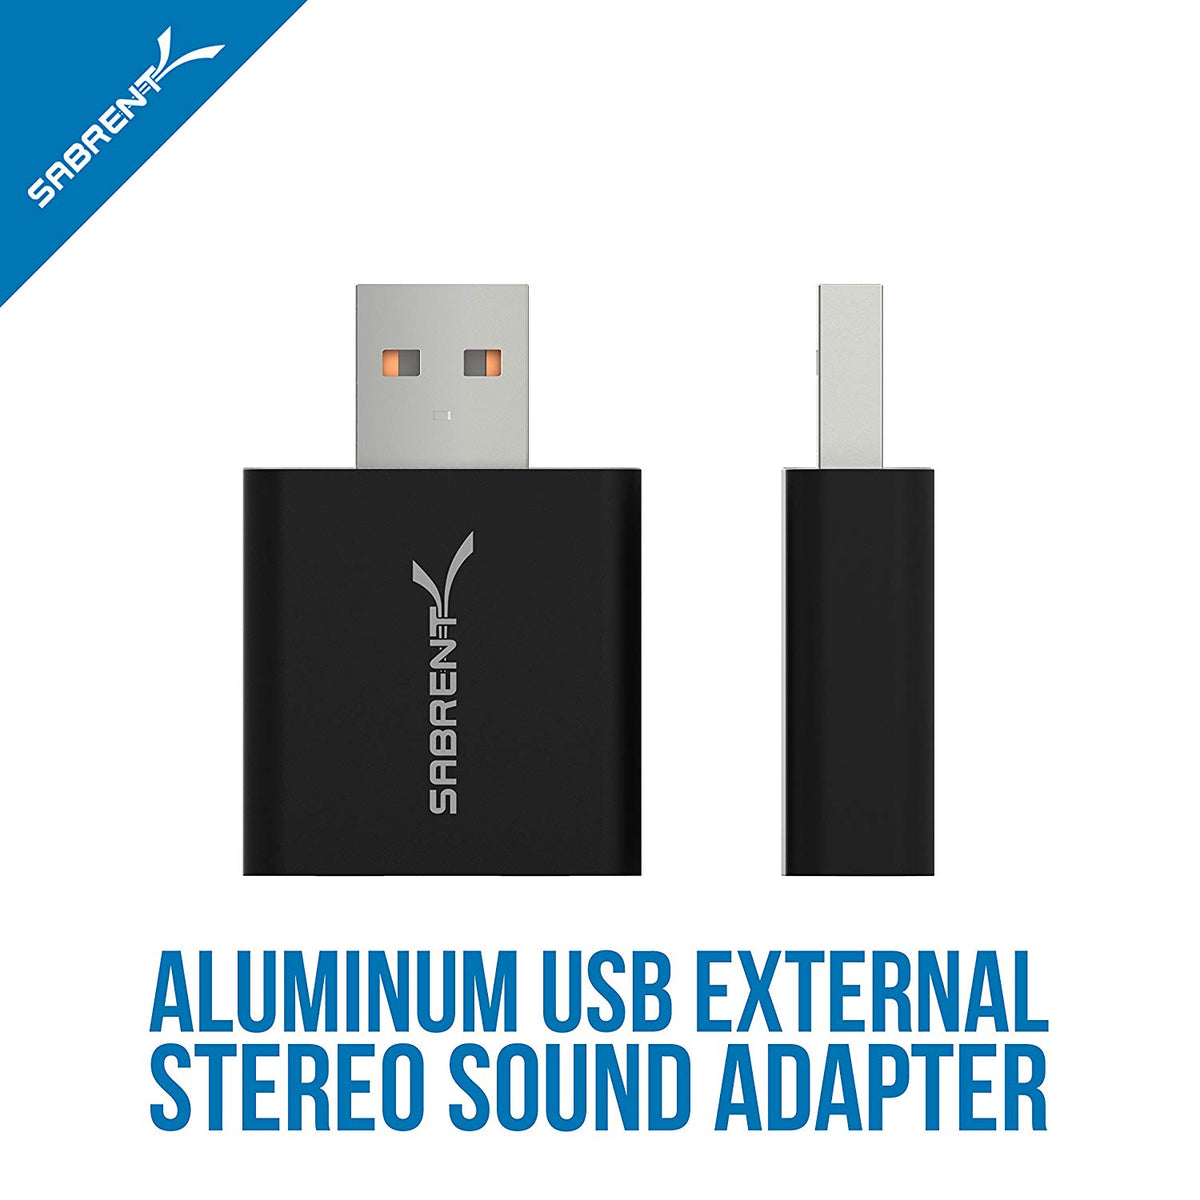 USB Aluminum External Stereo Sound Adapter